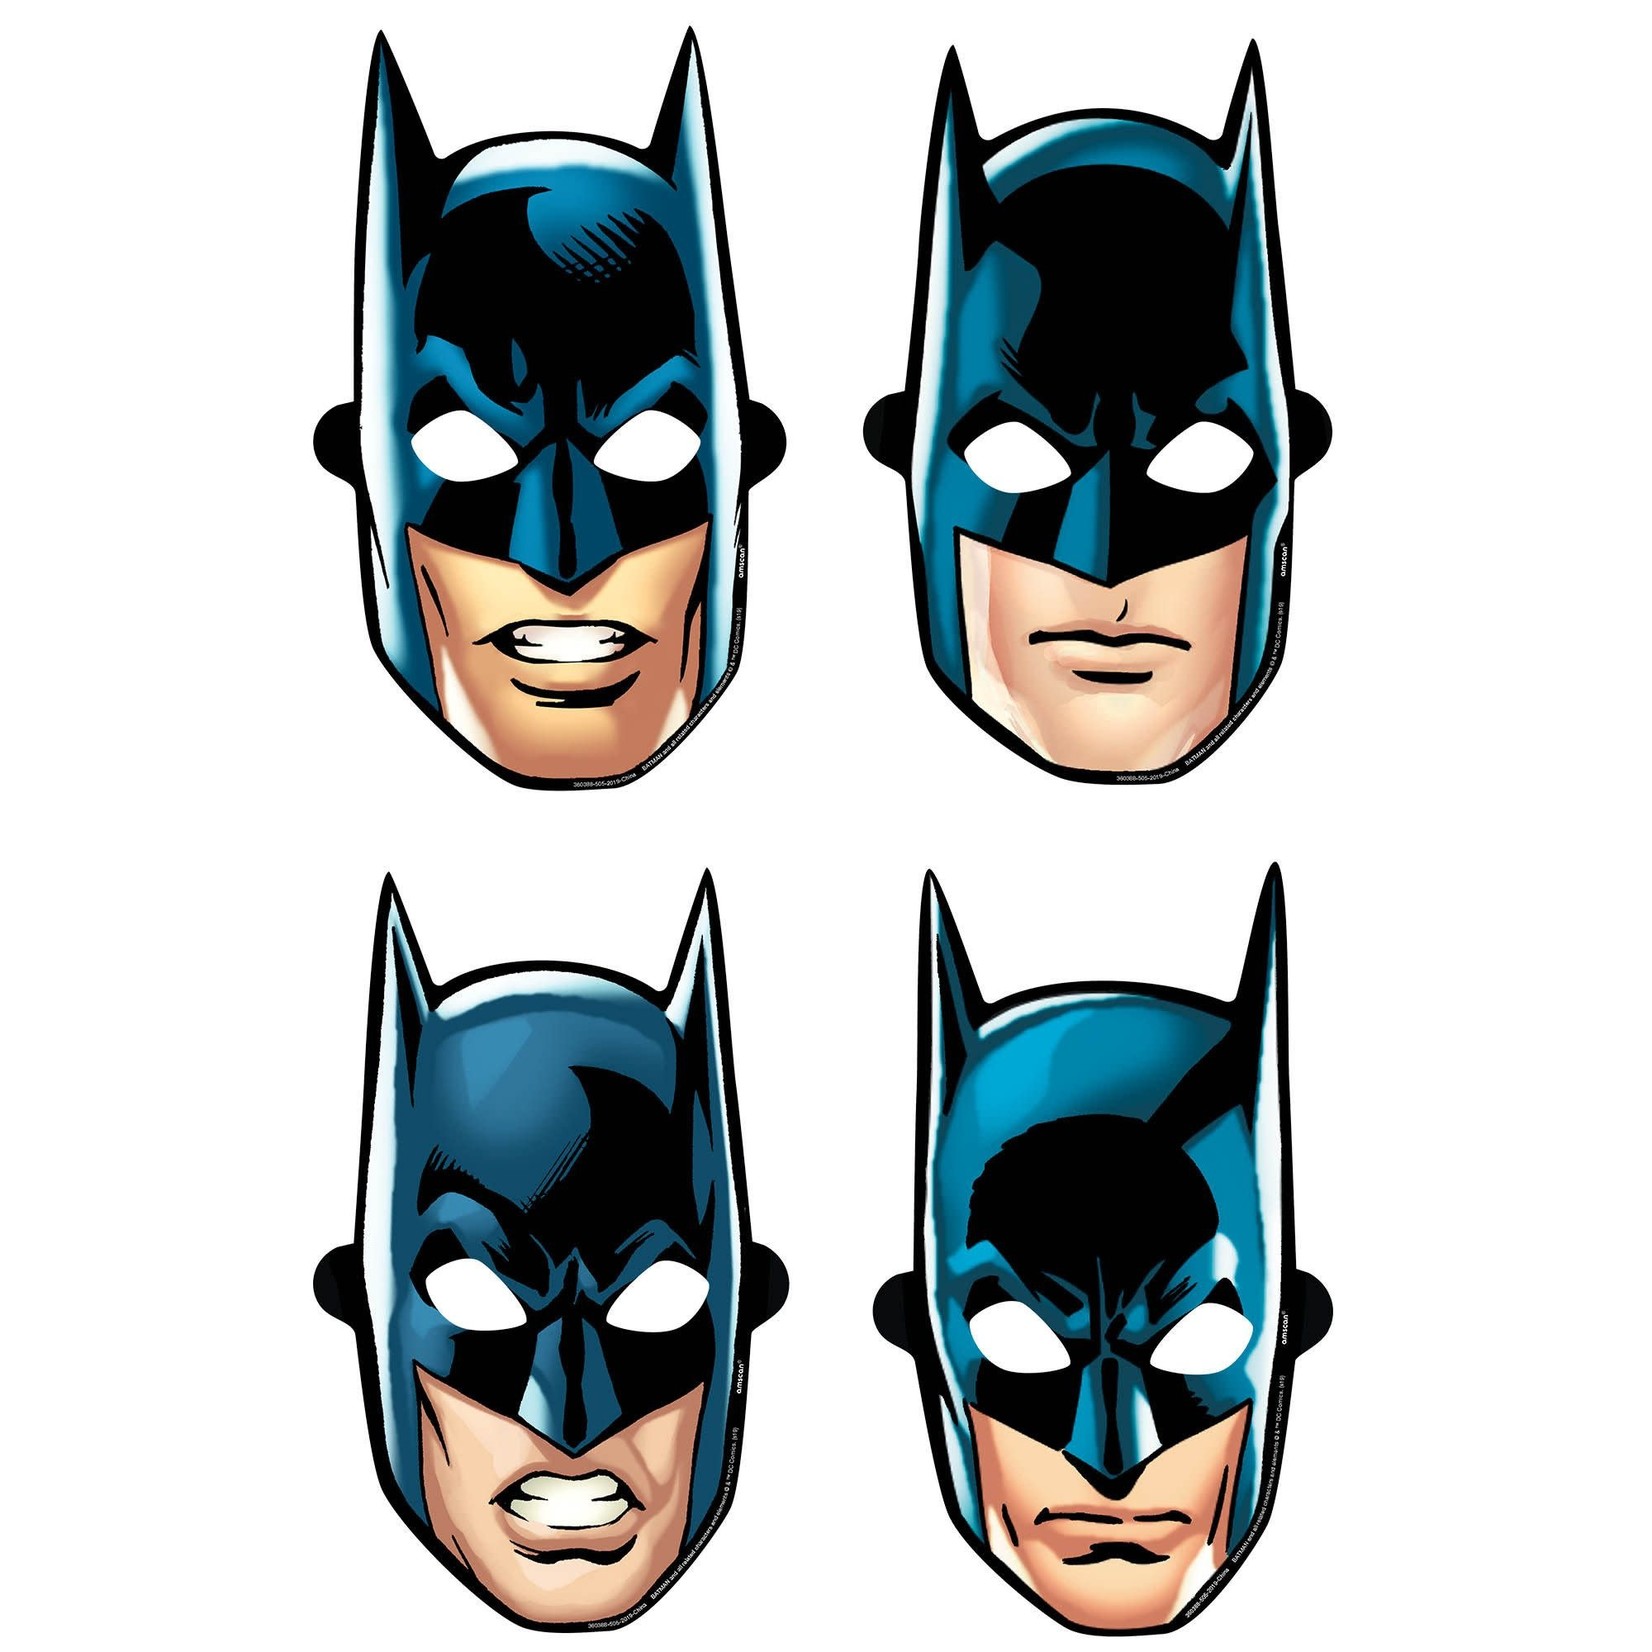 Batman Heroes Unite Paper Masks